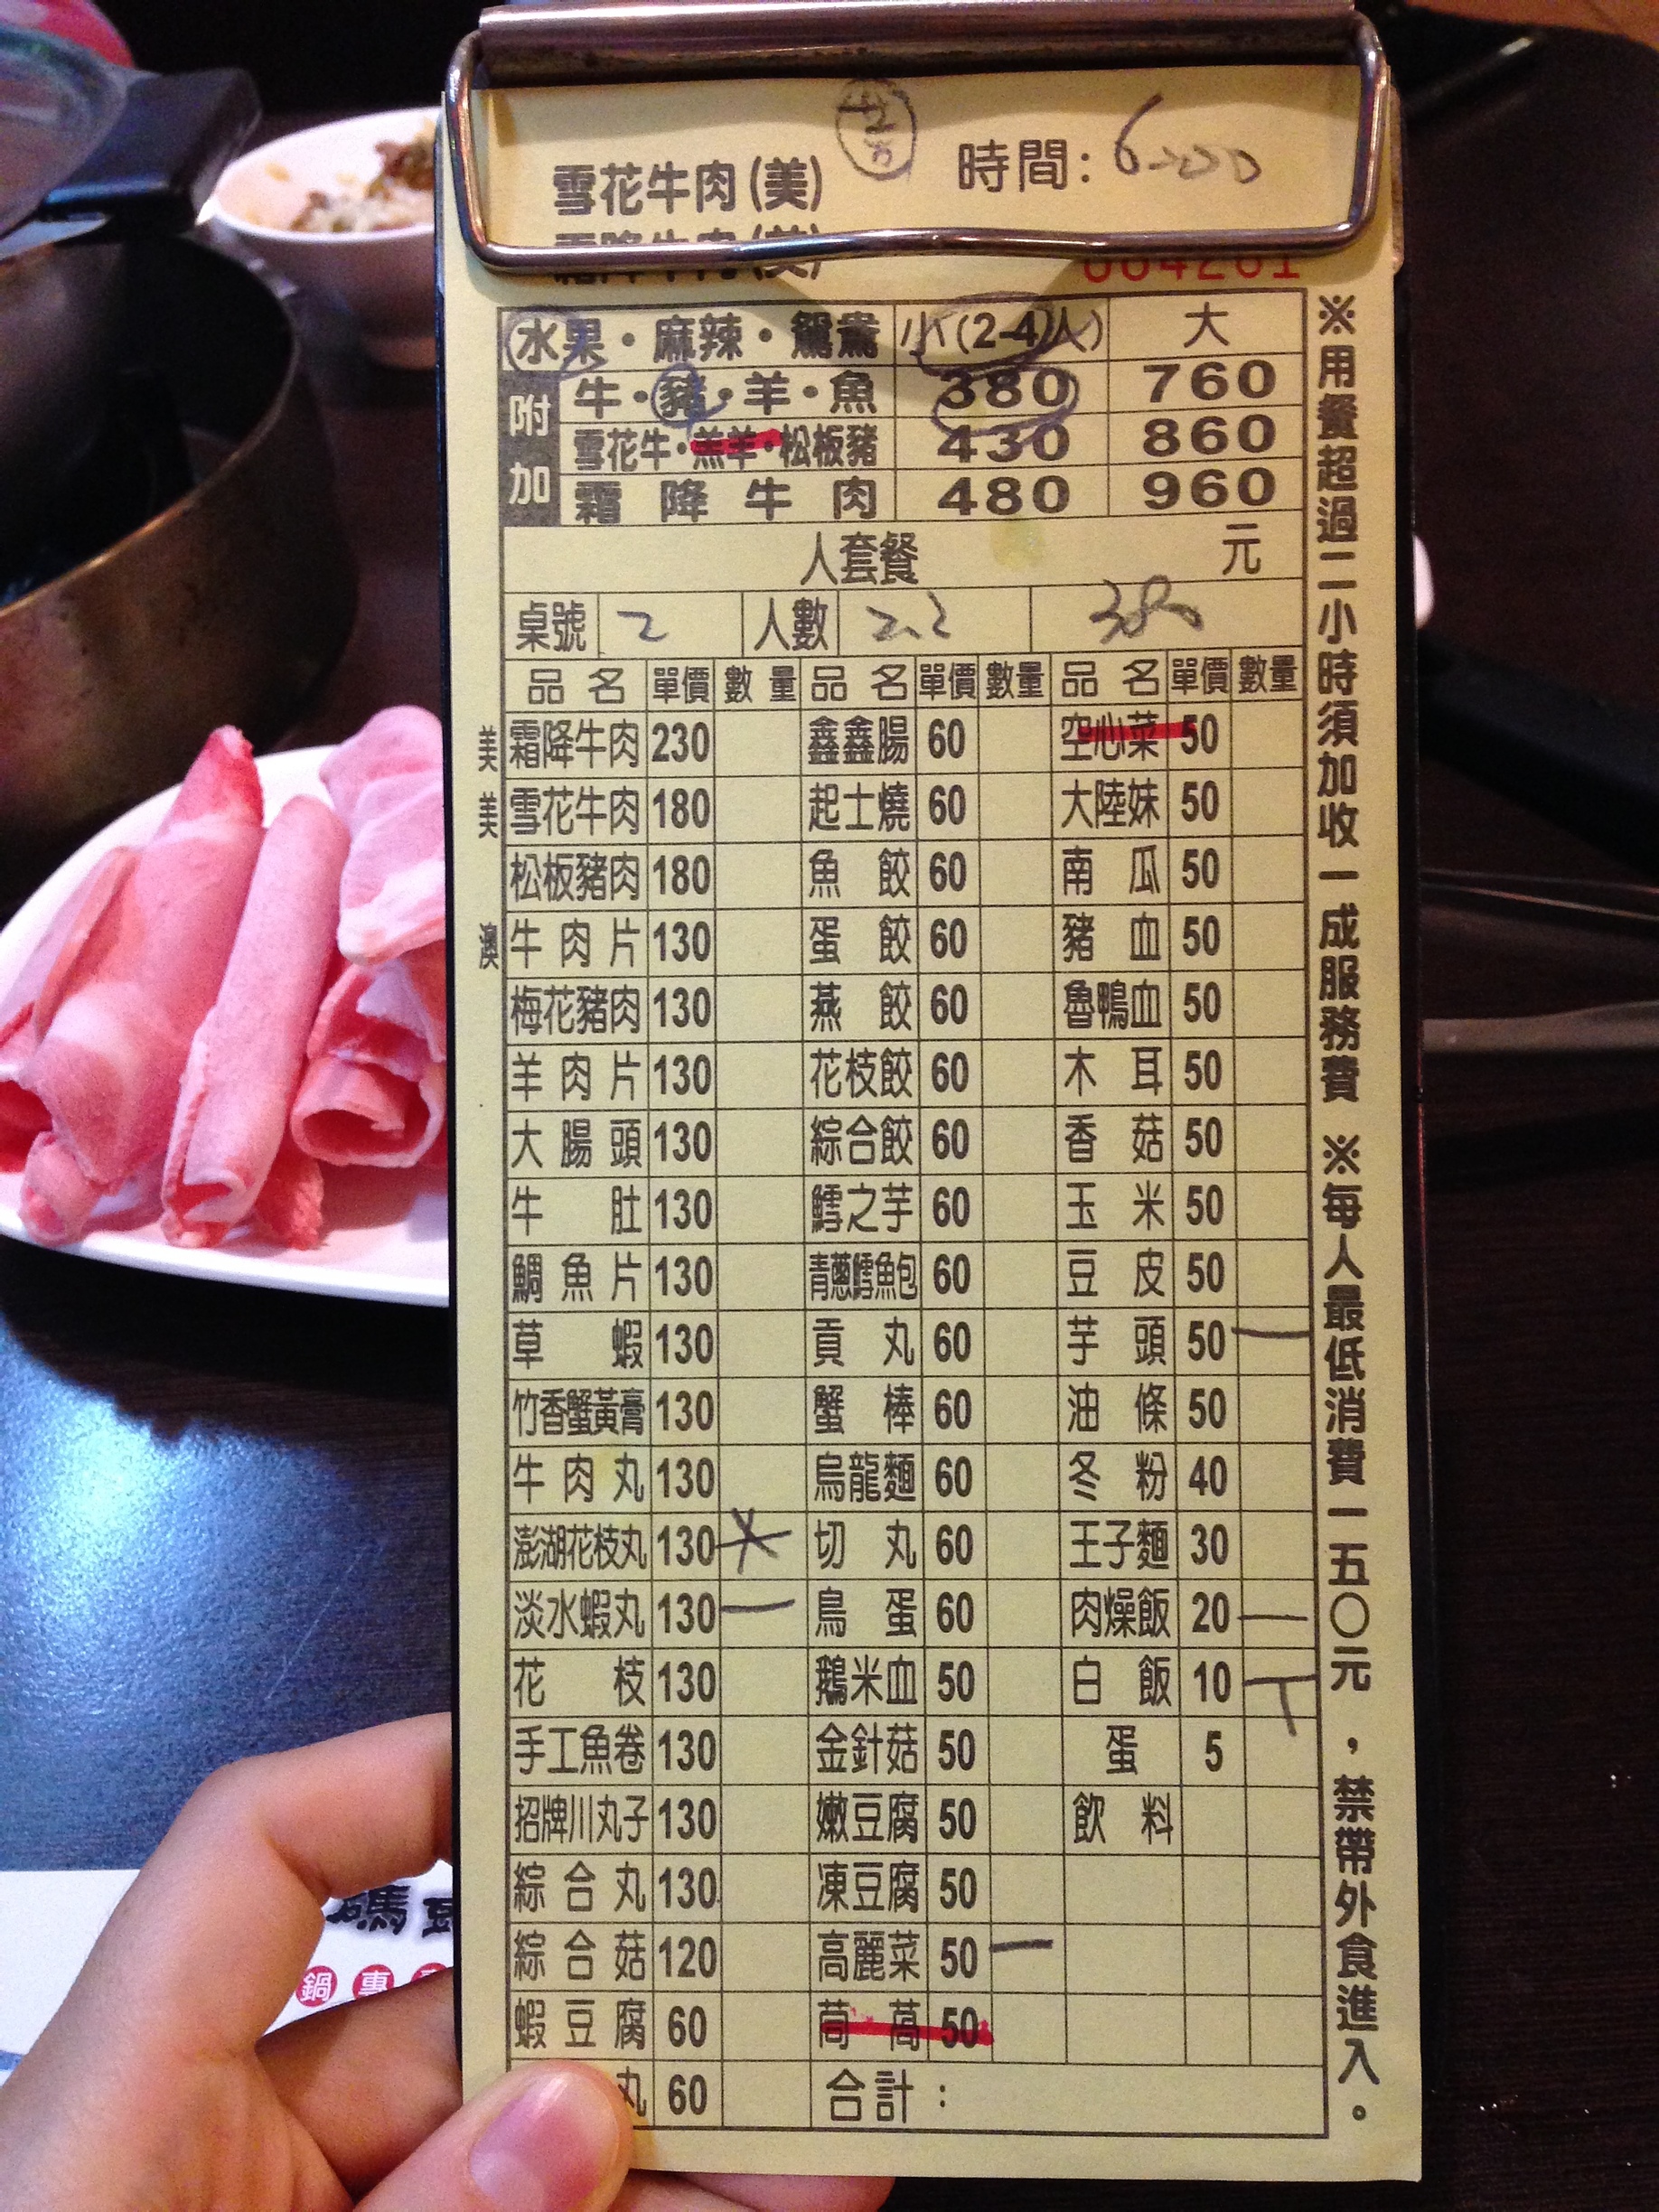 2016-10-10 191750.JPG - 員林餐廳